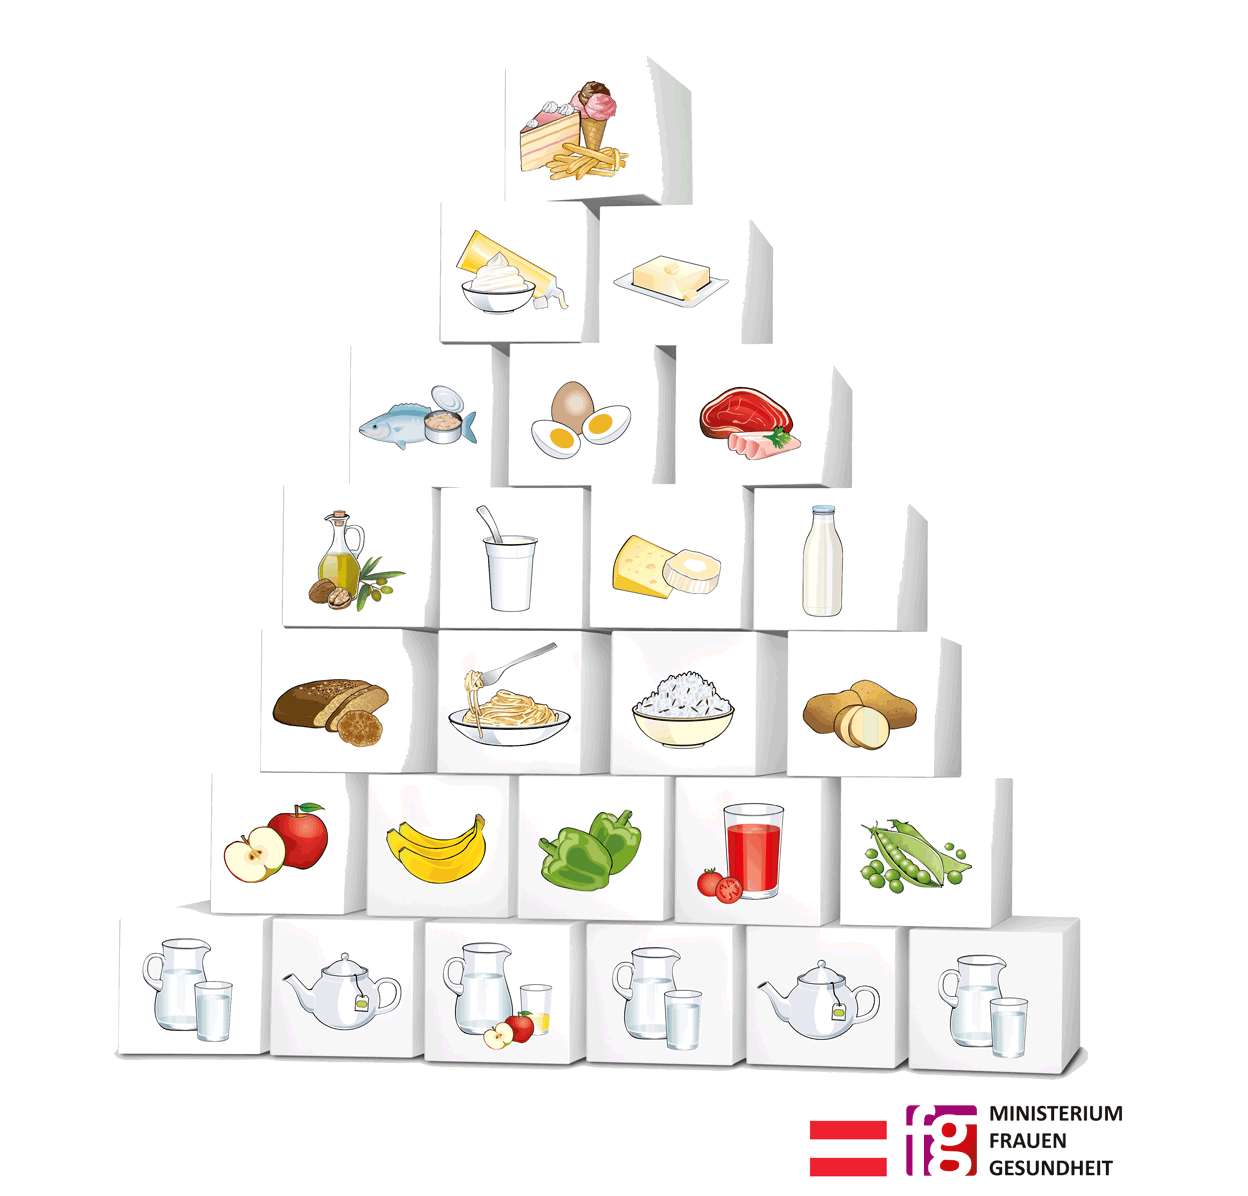 Ernährungspyramide Österreich - Die Ernährungspyramide gibt Auskunft über die Art und Menge der Nahrungsmittel und Getränke, die aufgenommen werden sollten. Sie ist nach einem Bausteinprinzip aufgebaut. Anhand der sieben Stufen der Pyramide kann abgelesen werden, wie häufig verschiedene Lebensmittelgruppen gegessen werden sollten.